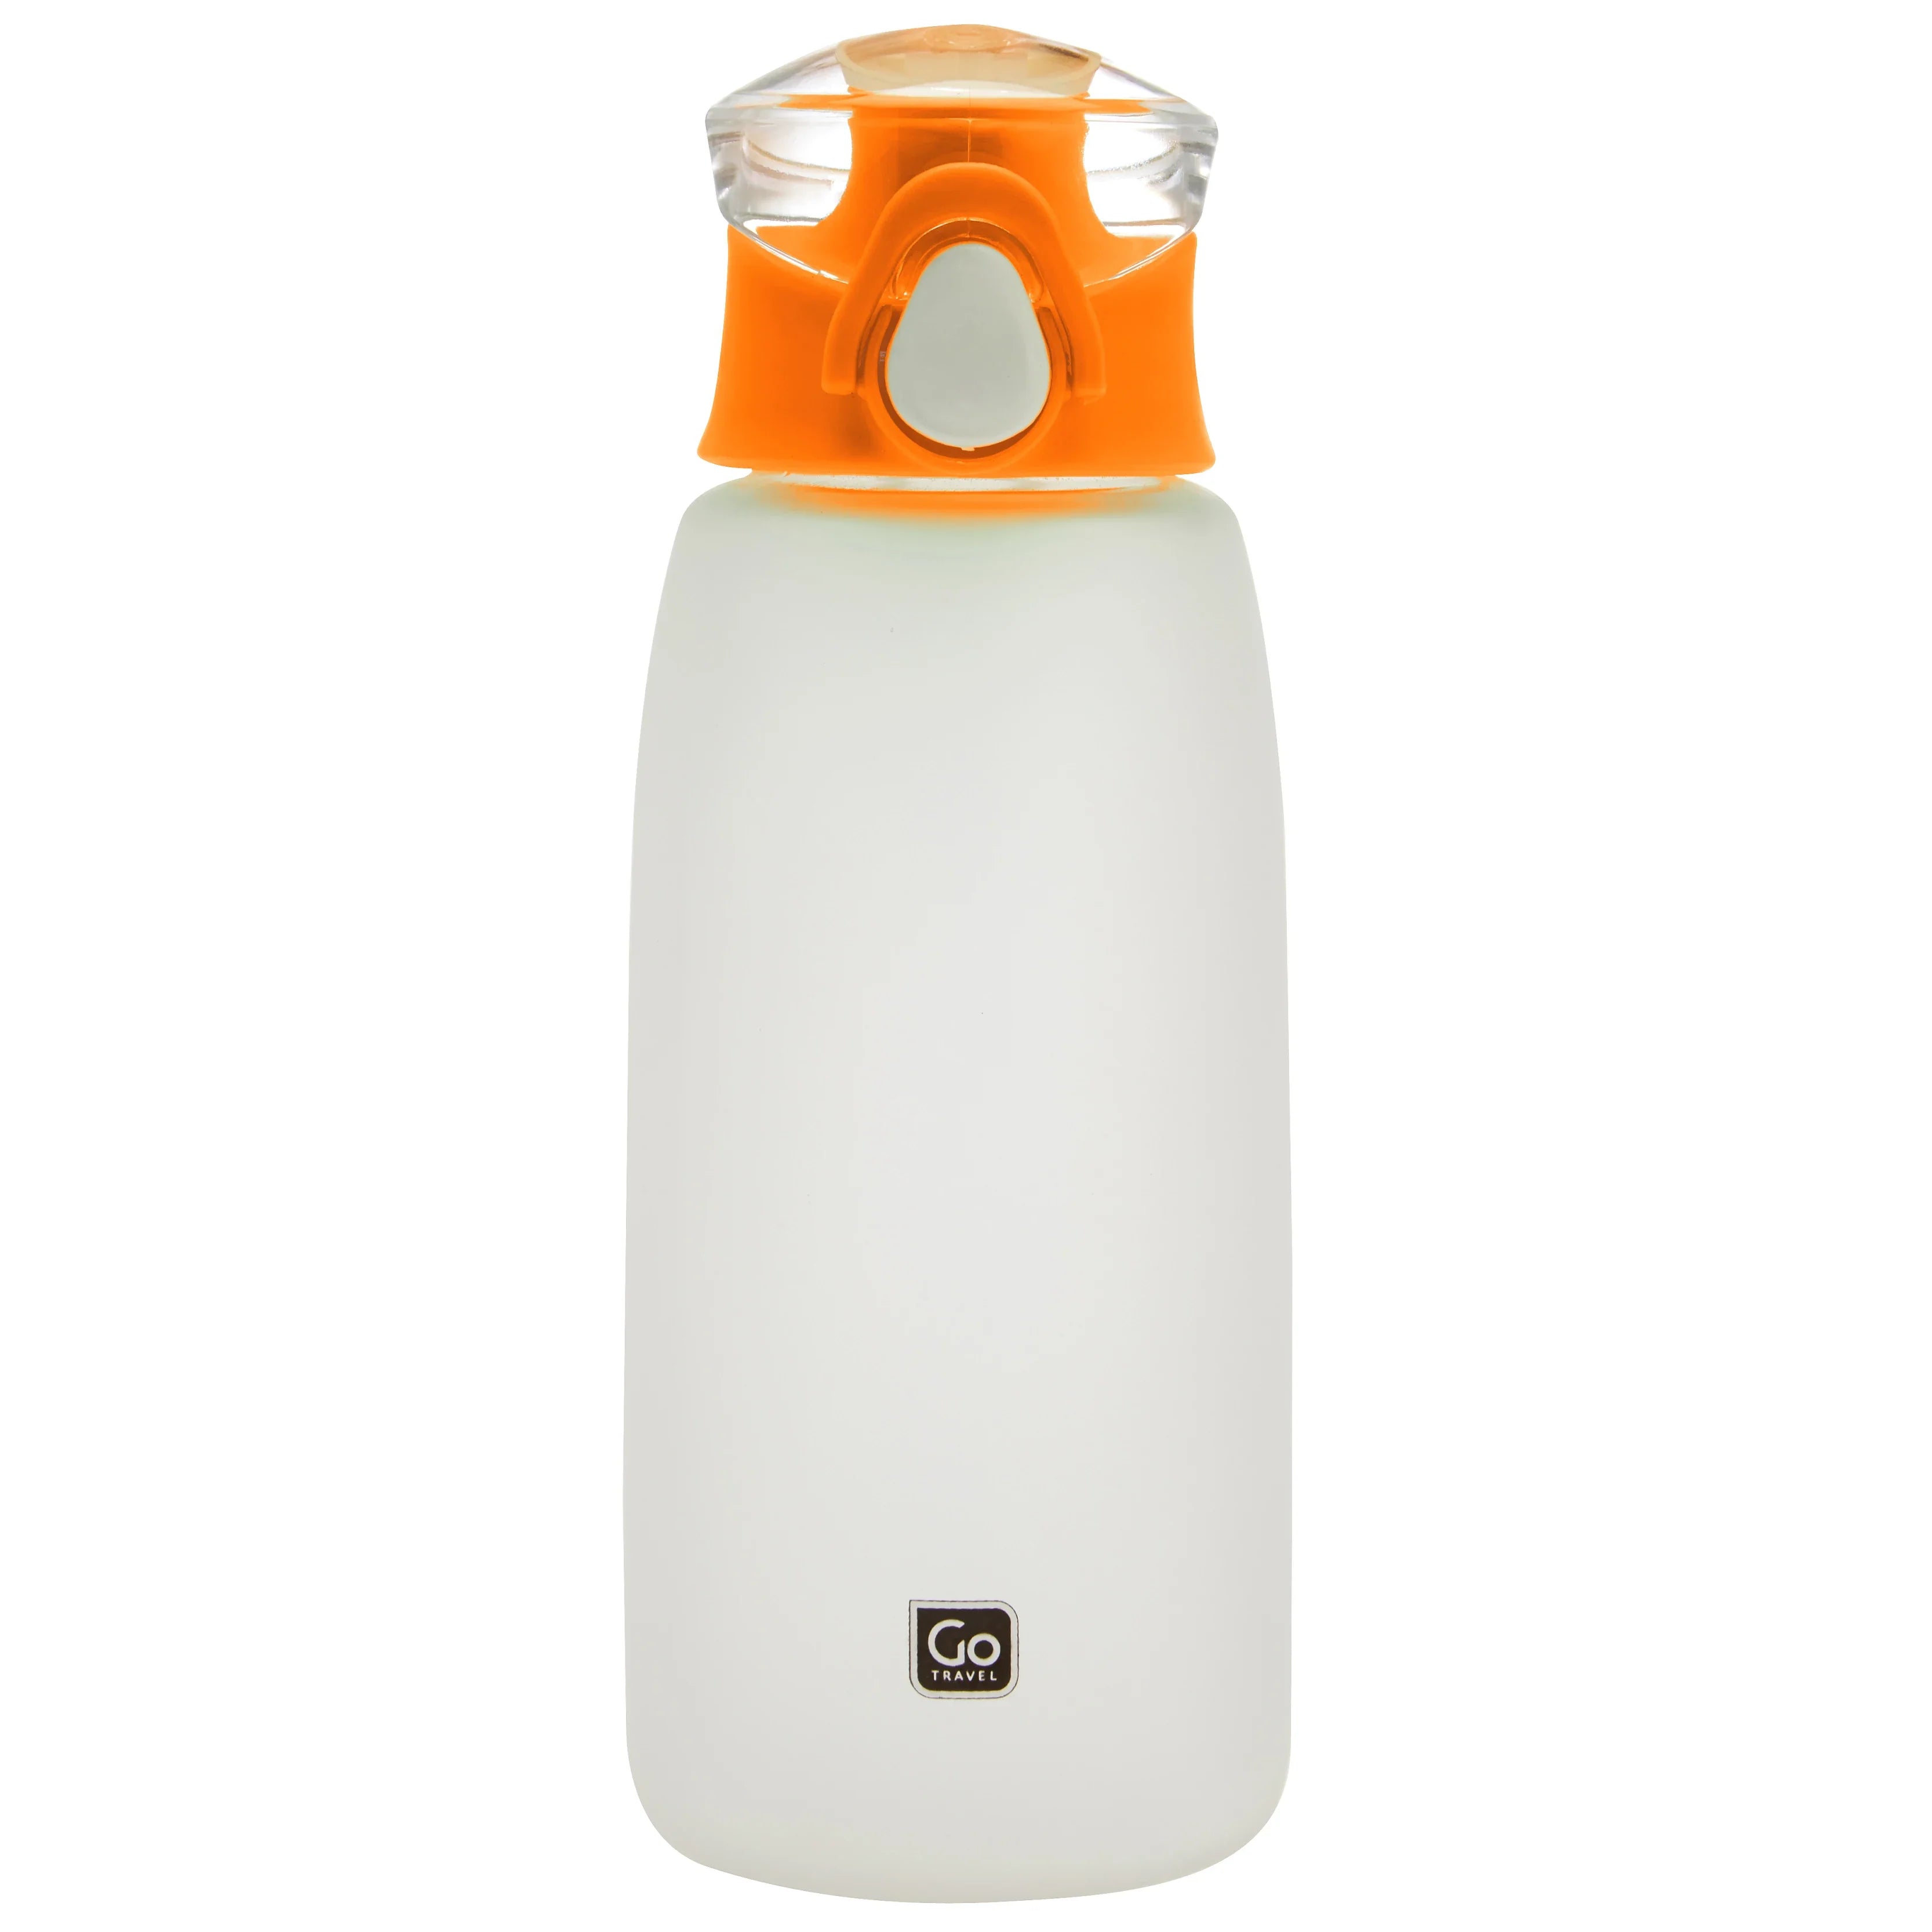 Design Go travel accessories drinking bottle - orange/transparent